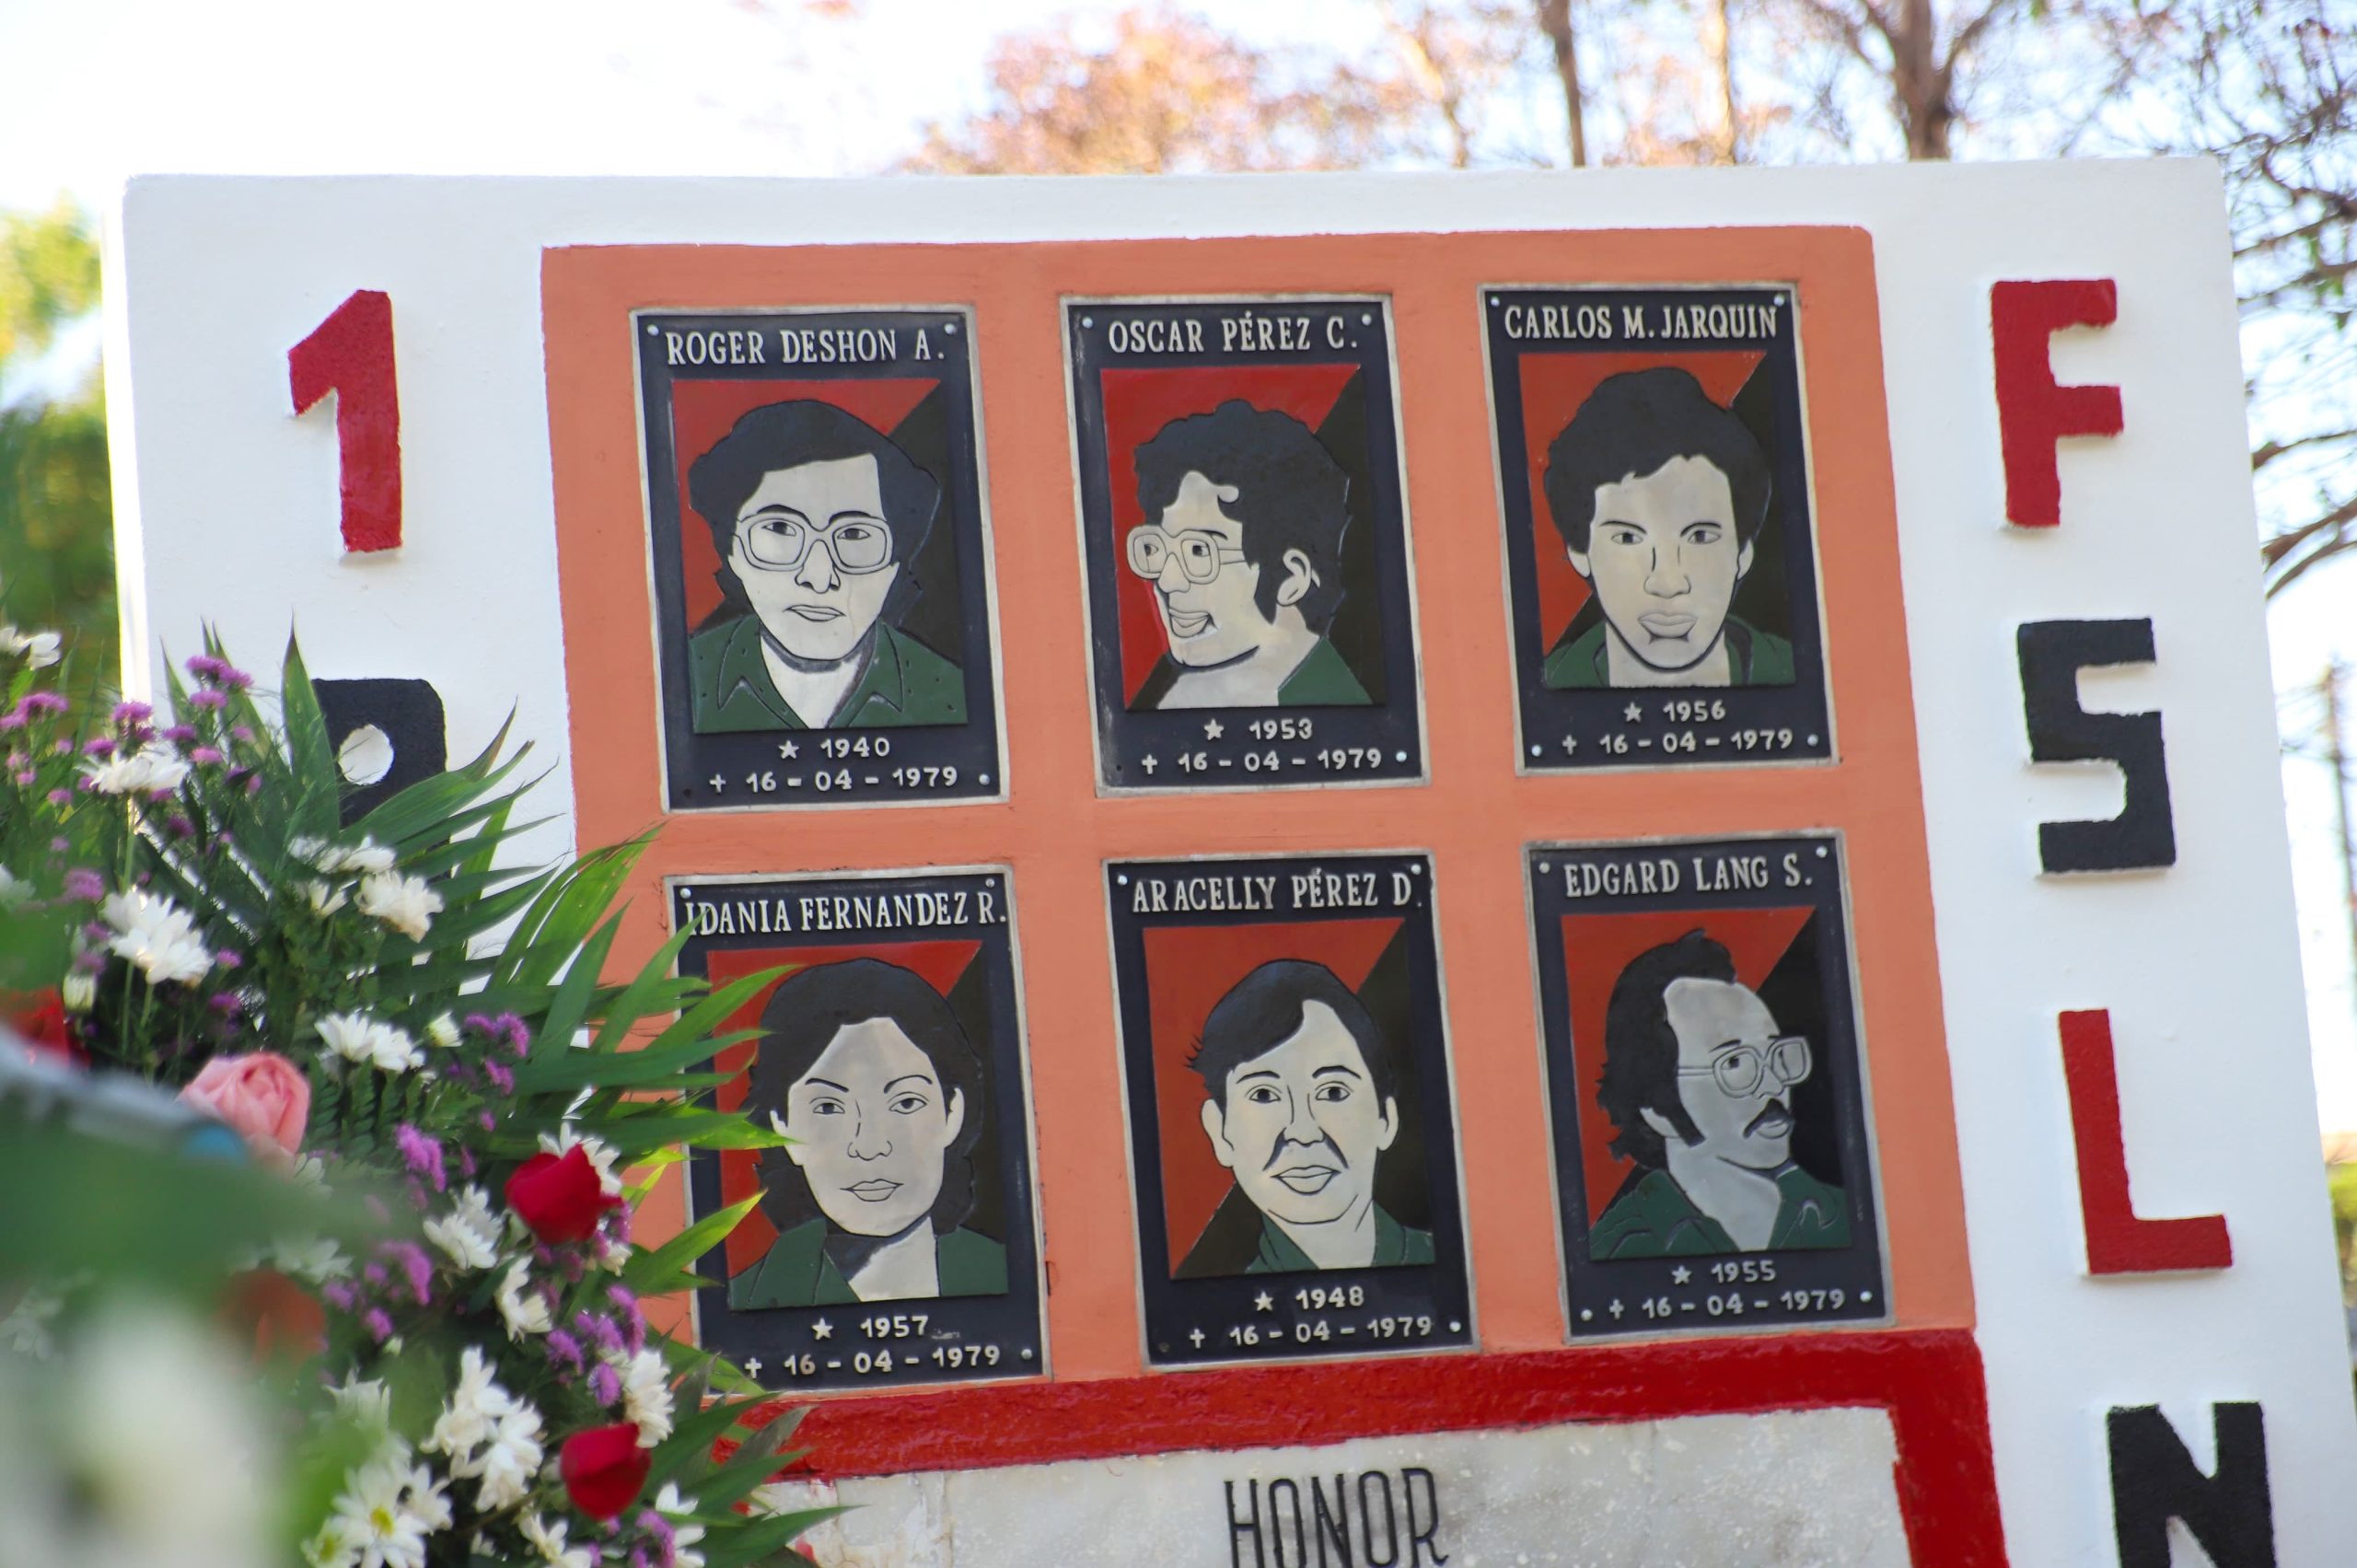 Celebramos la vida y los milagros de los héroes y mártires que dieron su vida por Nicaragua